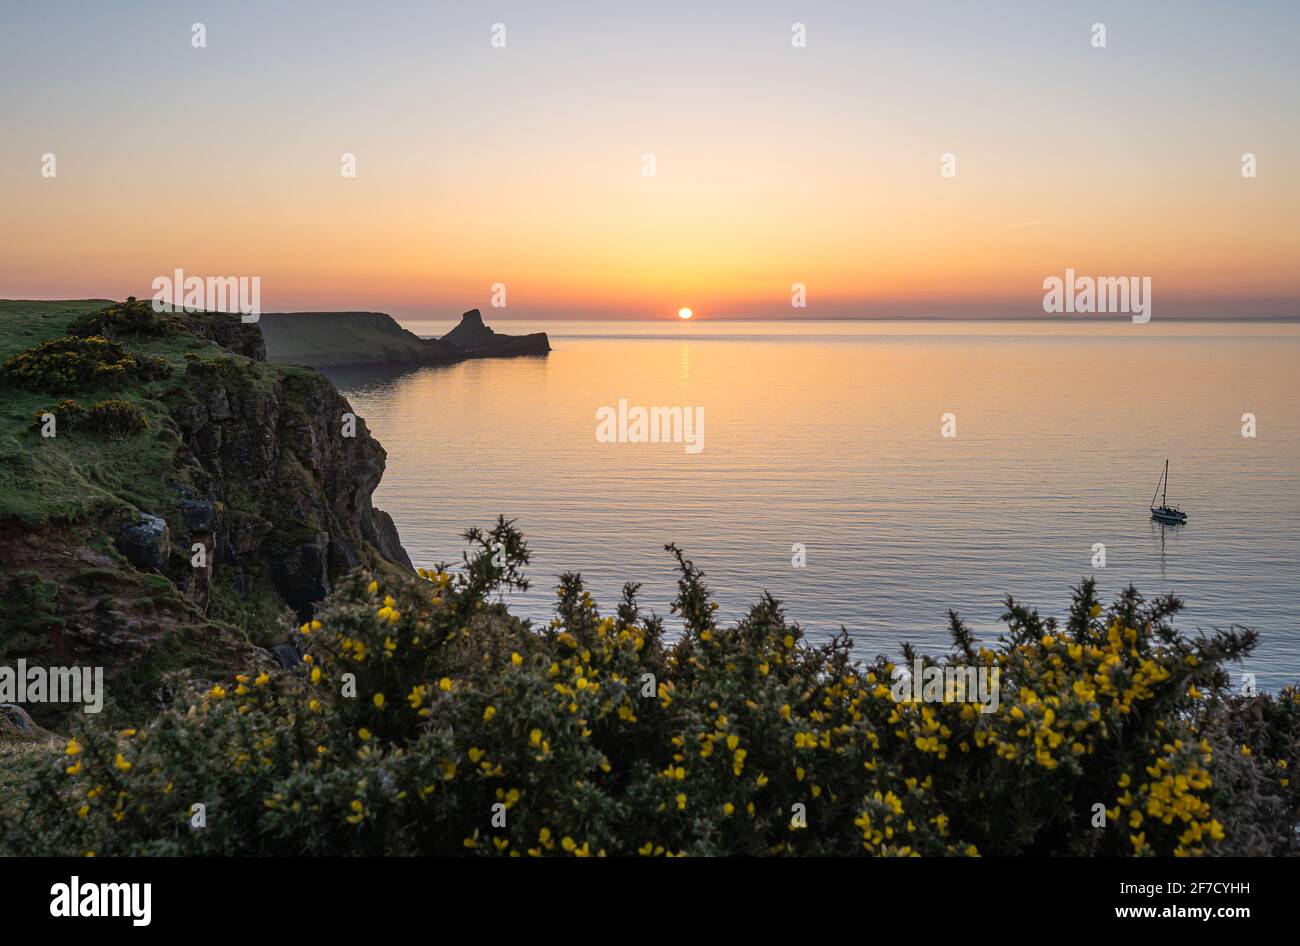 Tête de ver Rhossili Bay au coucher du soleil et un seul bateau, péninsule de Gower, pays de Galles du Sud, Royaume-Uni Banque D'Images